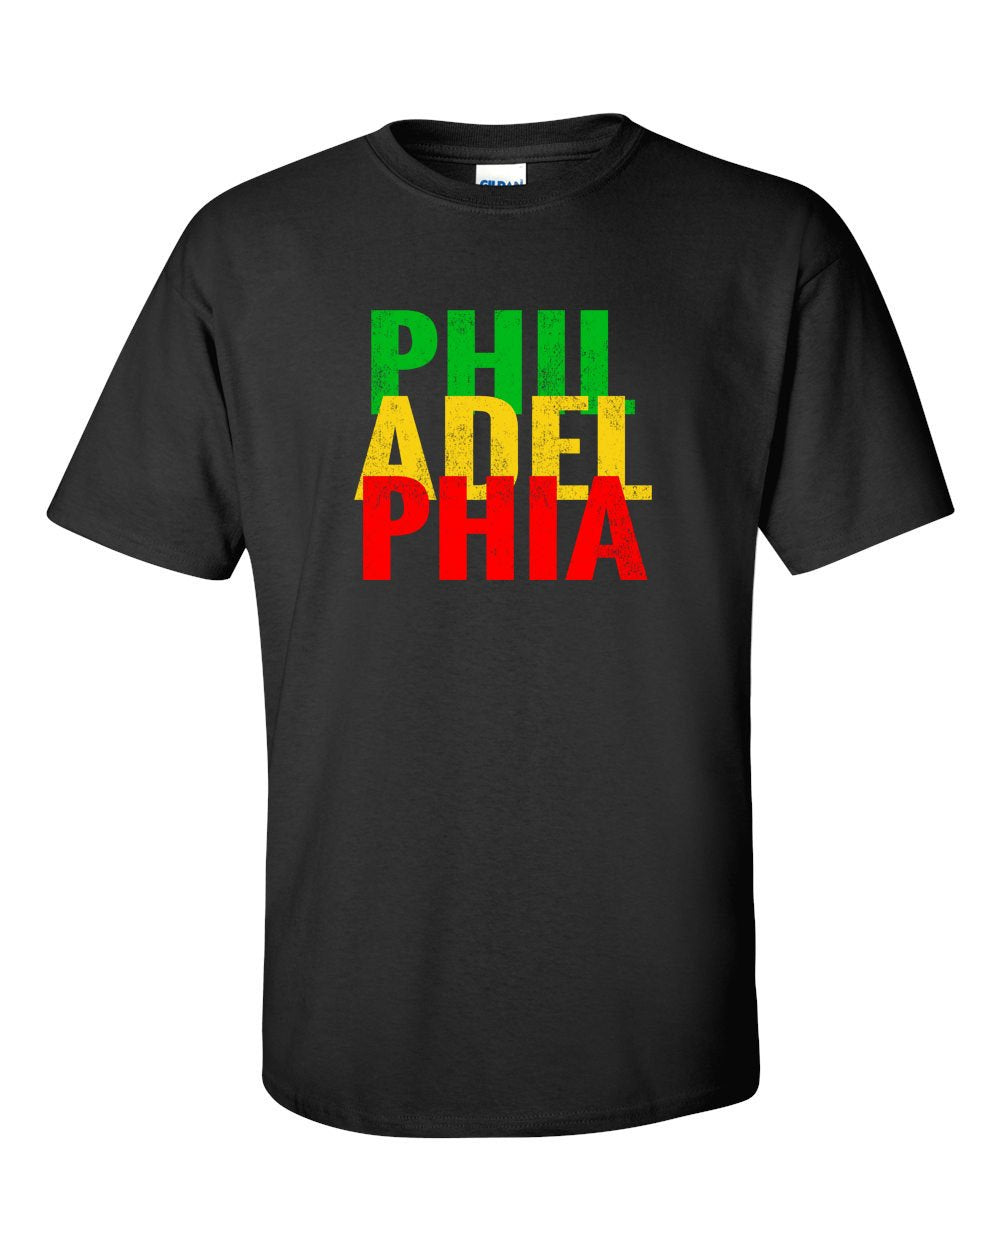 Rasta Philly Letters Mens/Unisex T-Shirt